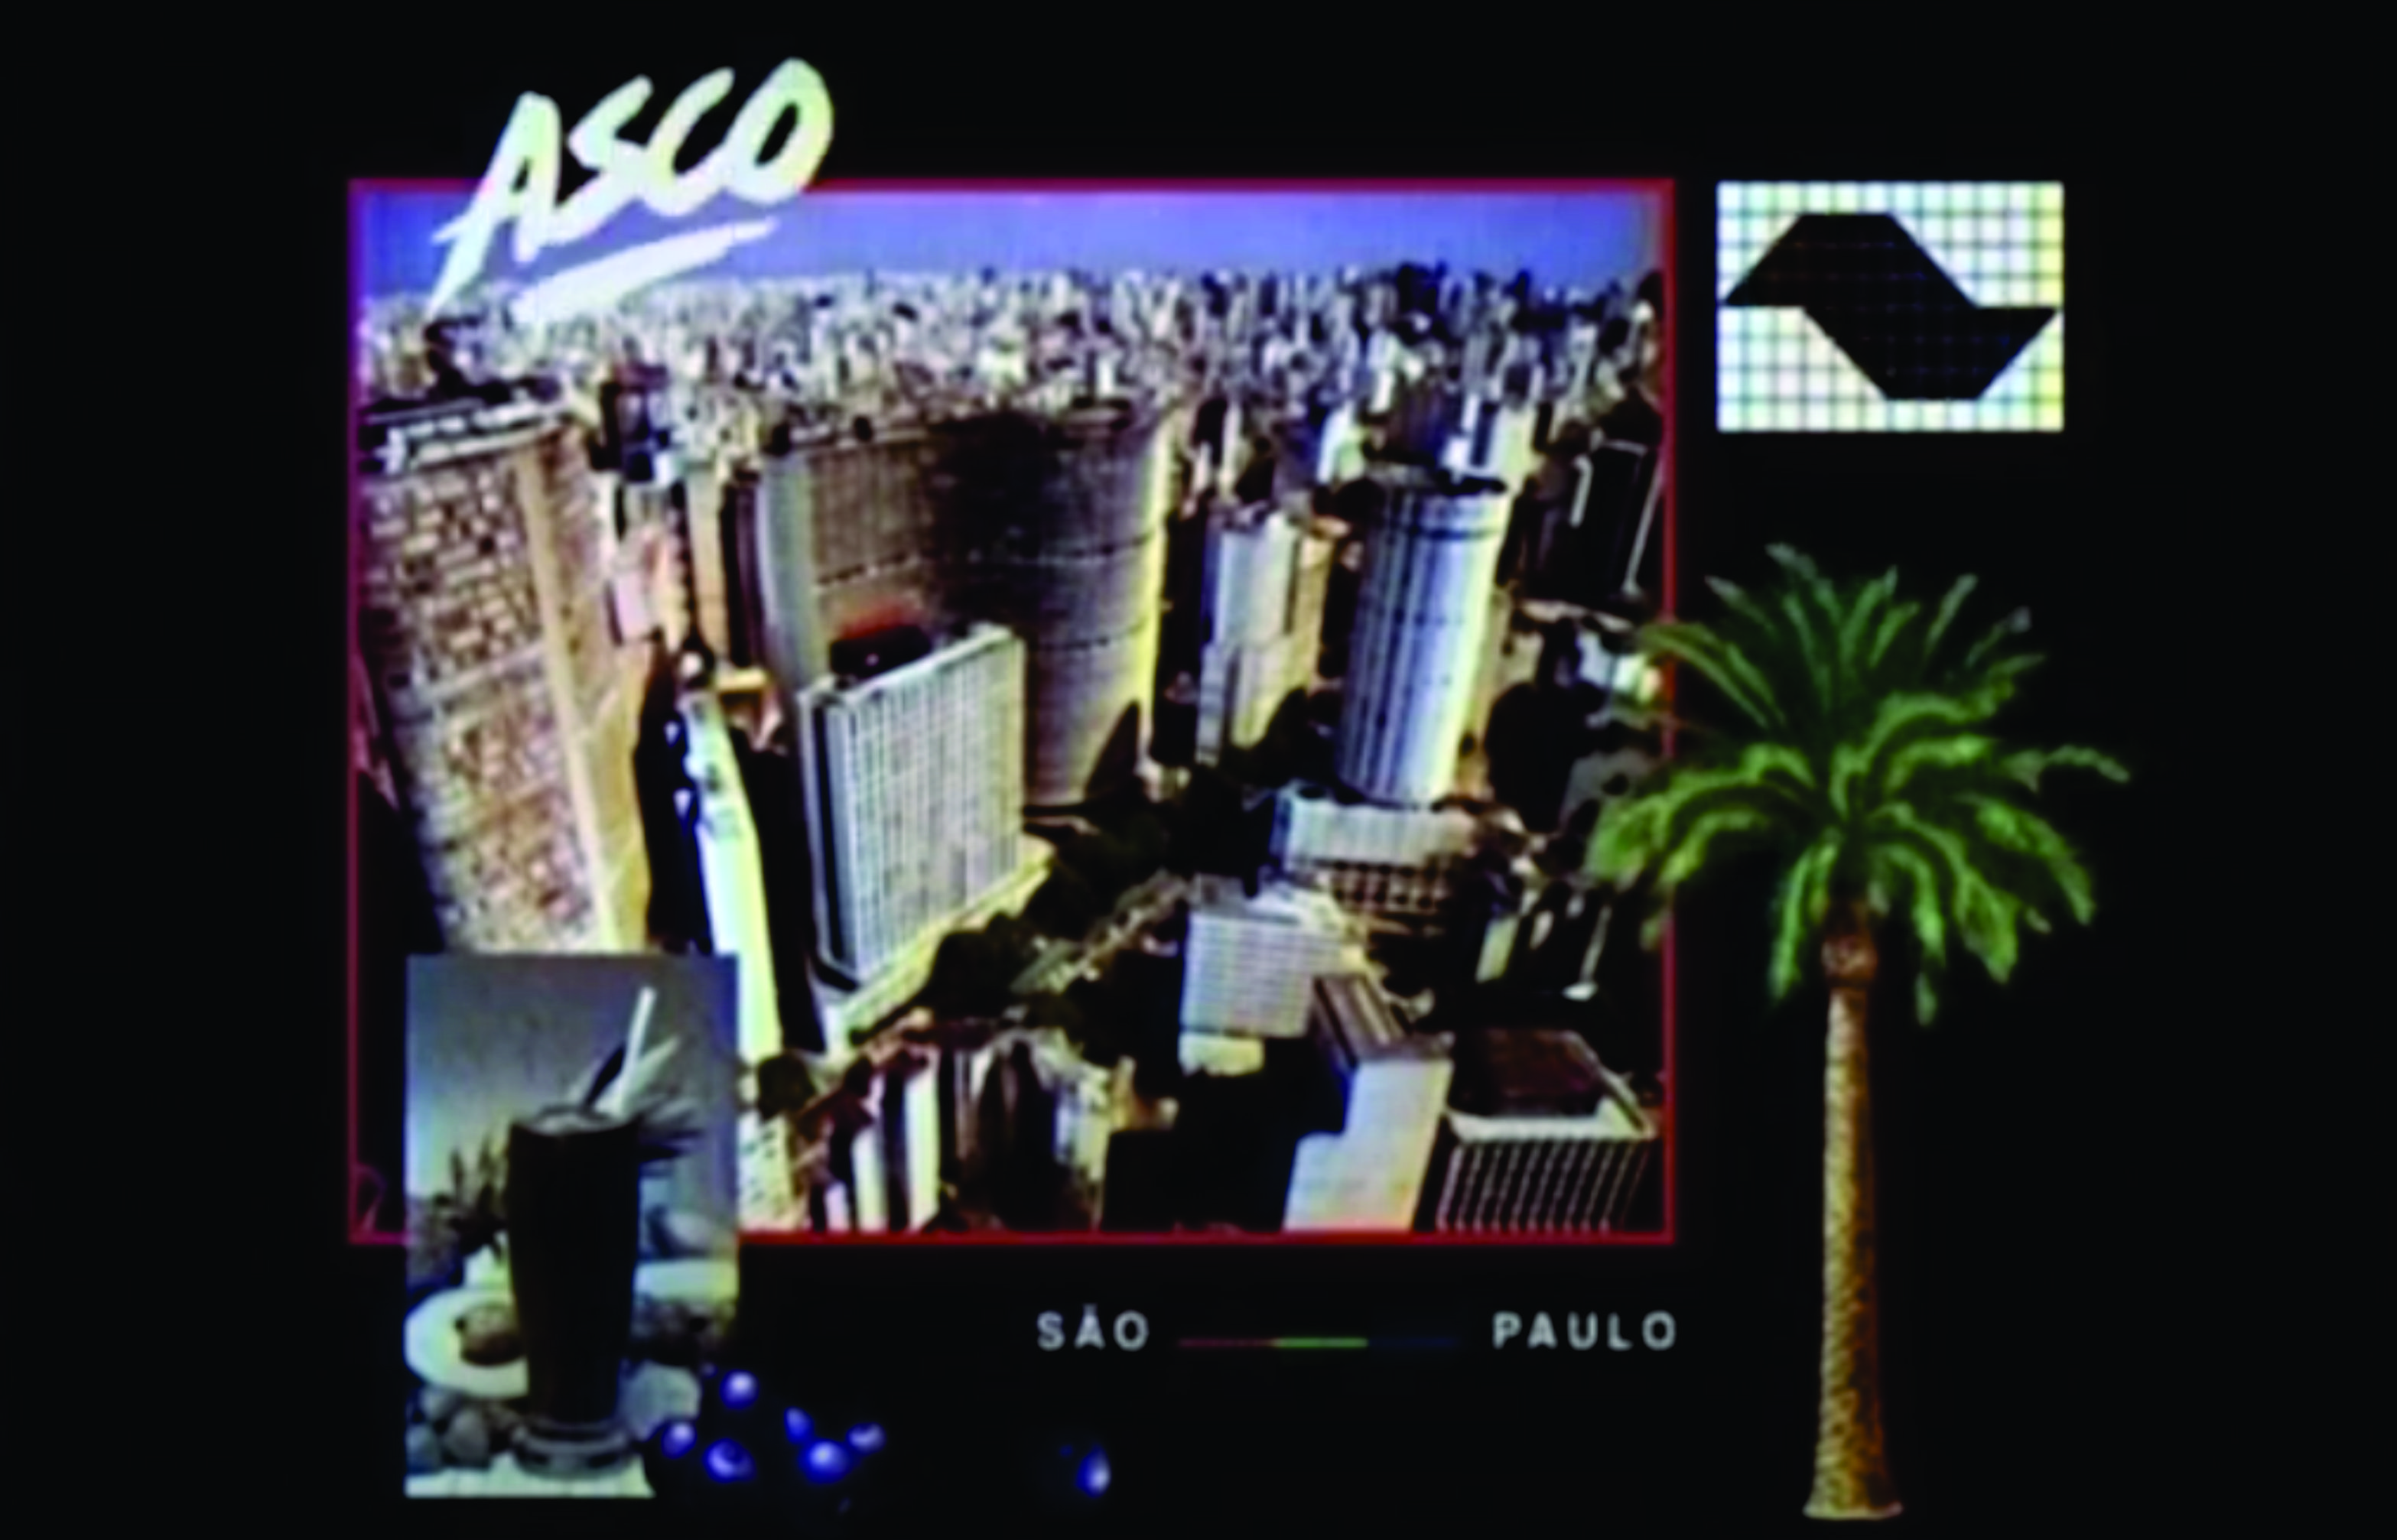 ASCO - São Paulo cover